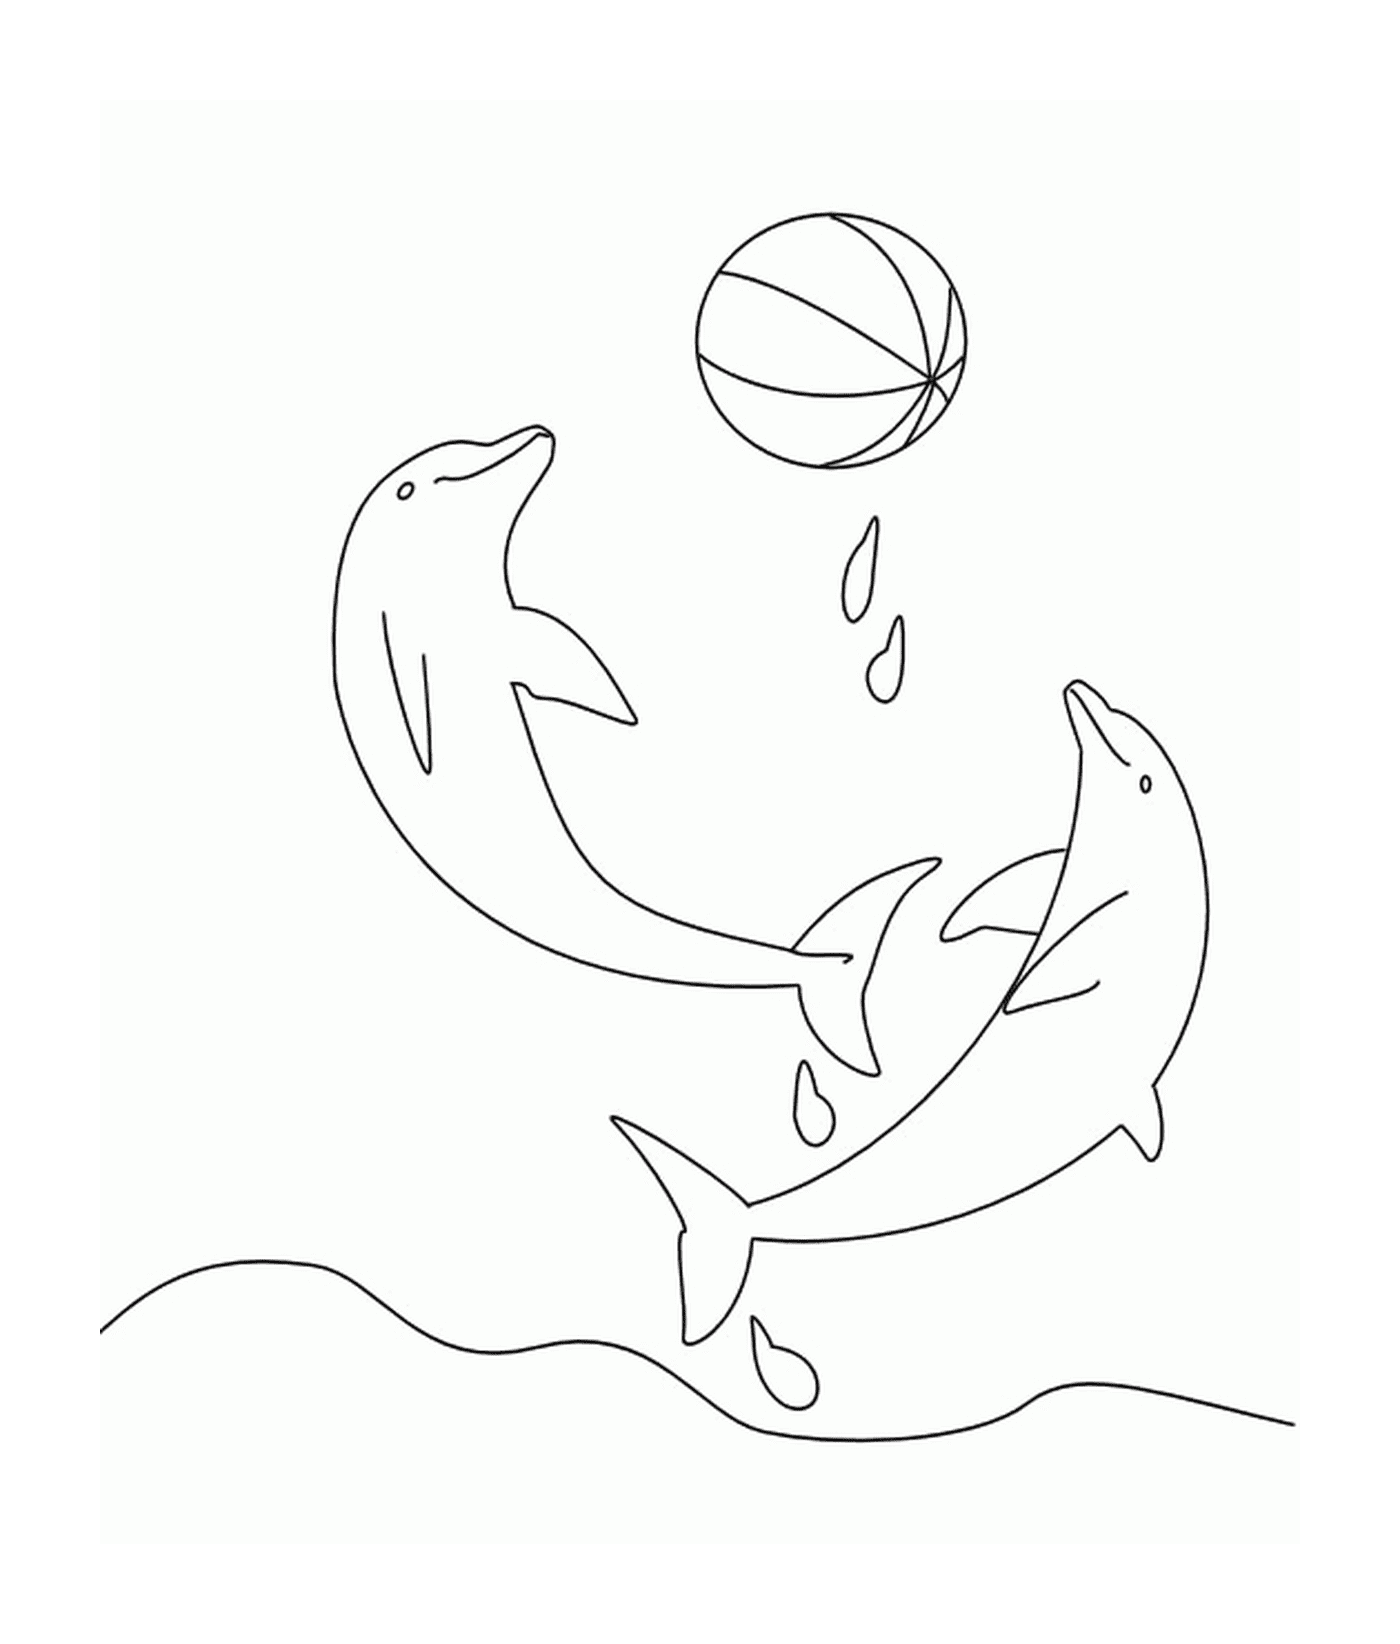  Dois golfinhos brincando com um balão 